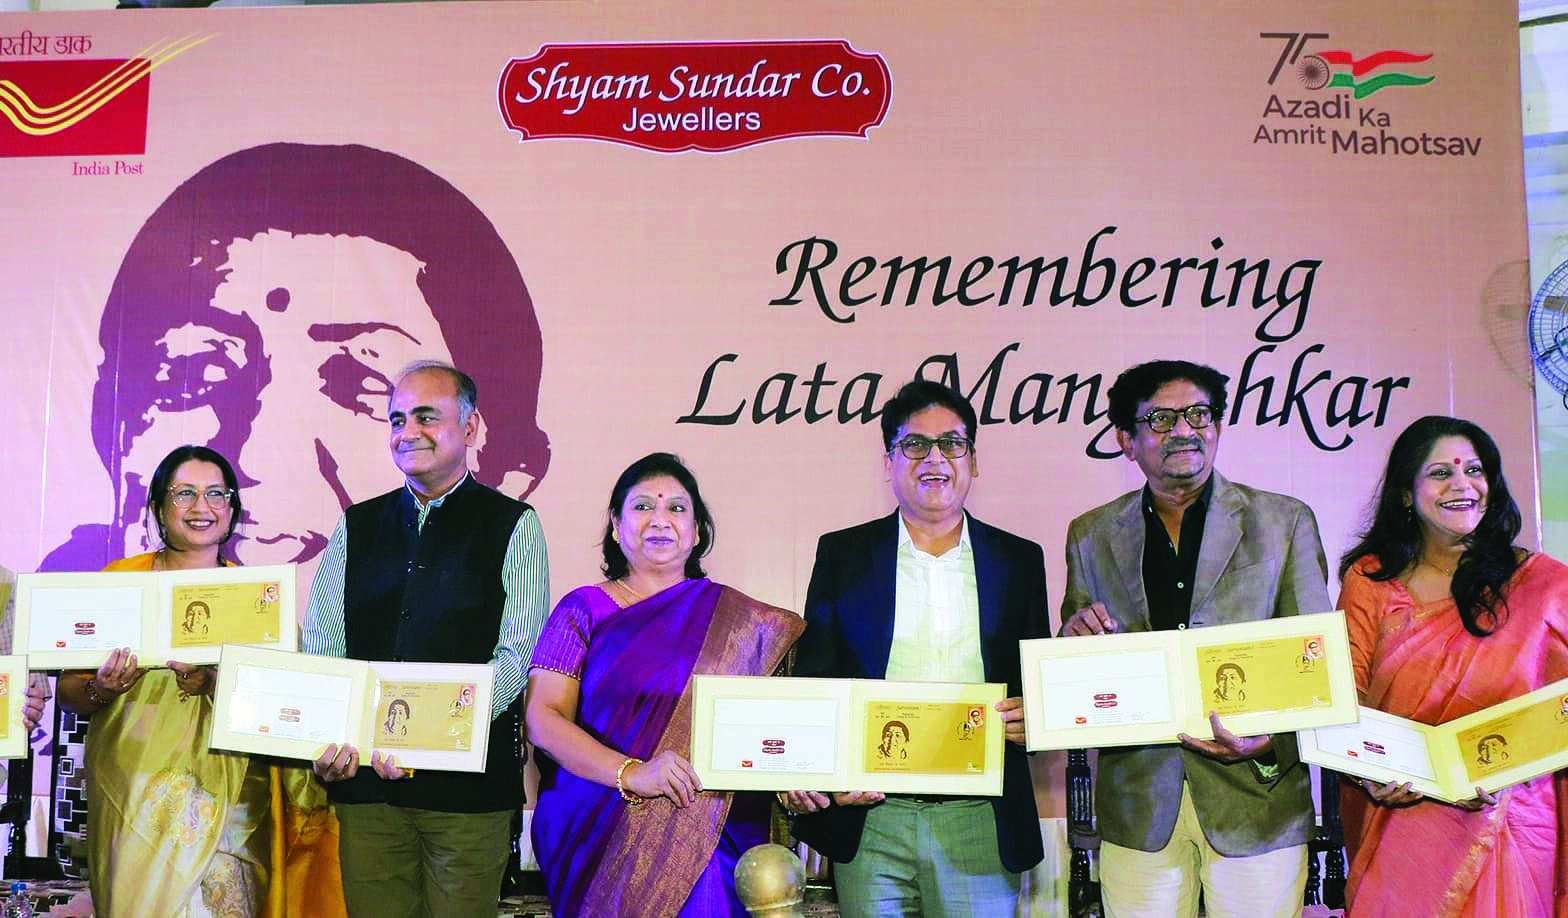 Shyam Sundar Co Jewellers pays tribute to Lata Mangeshkar